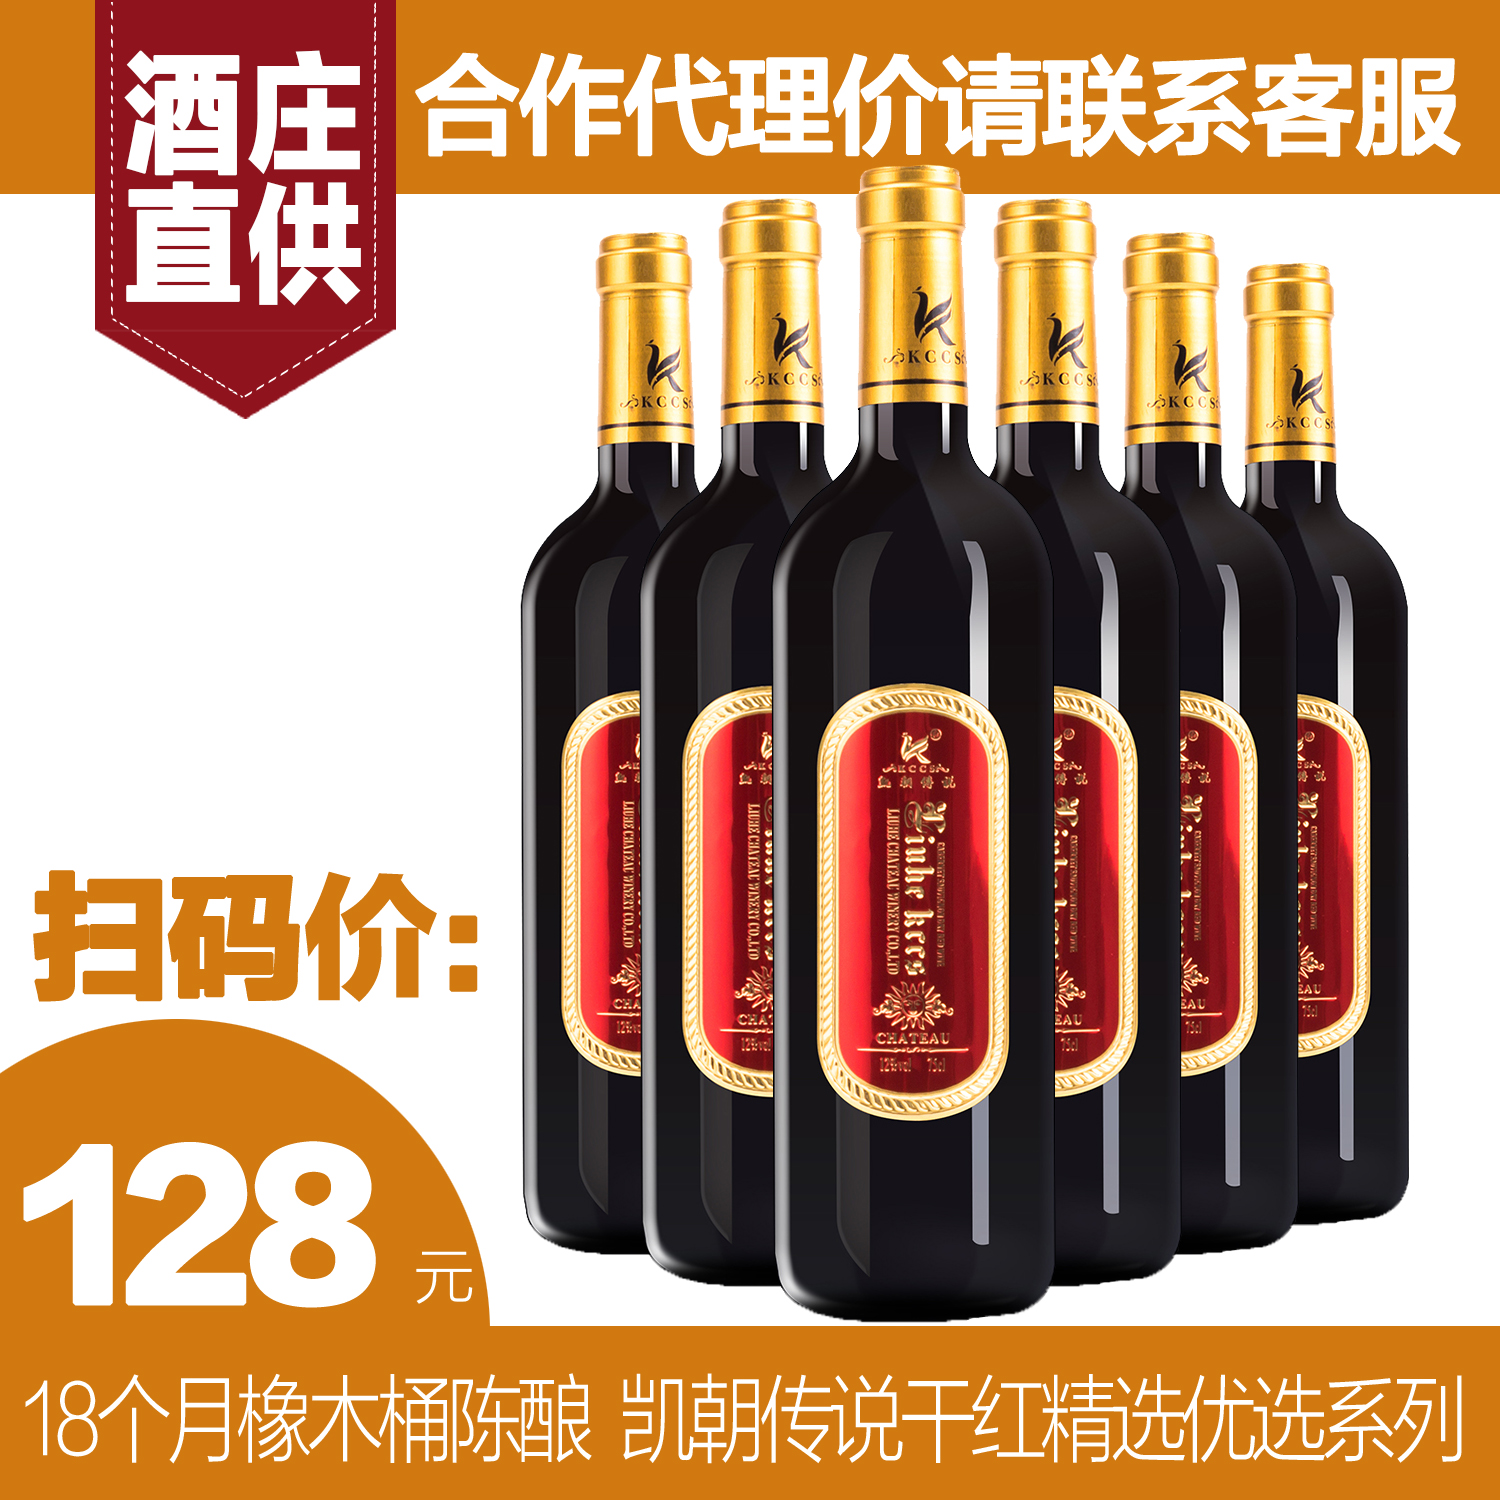 广州哪里有红葡萄酒广州哪里有红葡萄酒 广州红葡萄酒哪家好 广州红葡萄酒批发 广州红葡萄酒价格